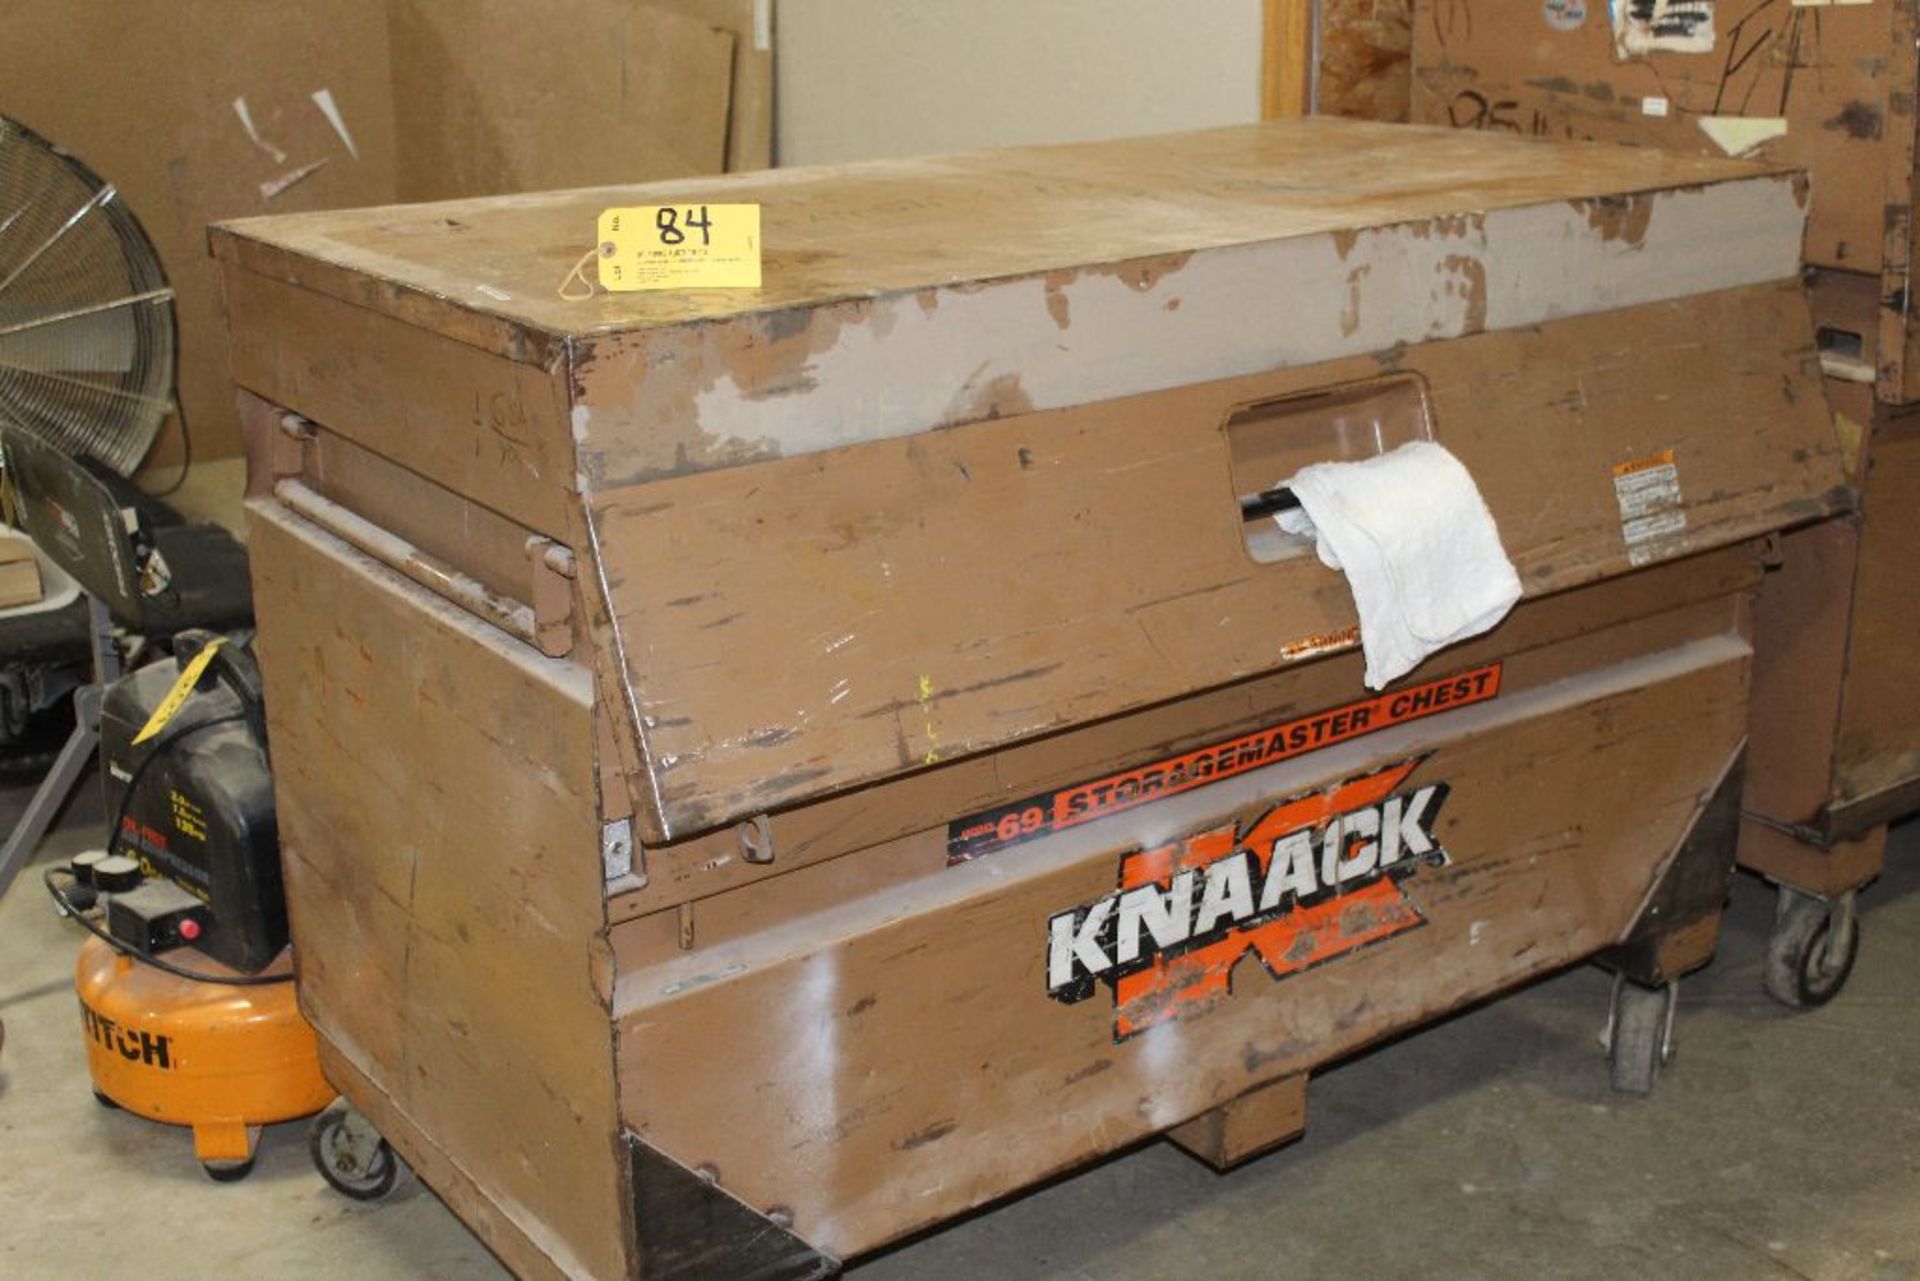 Knaack storage chest.